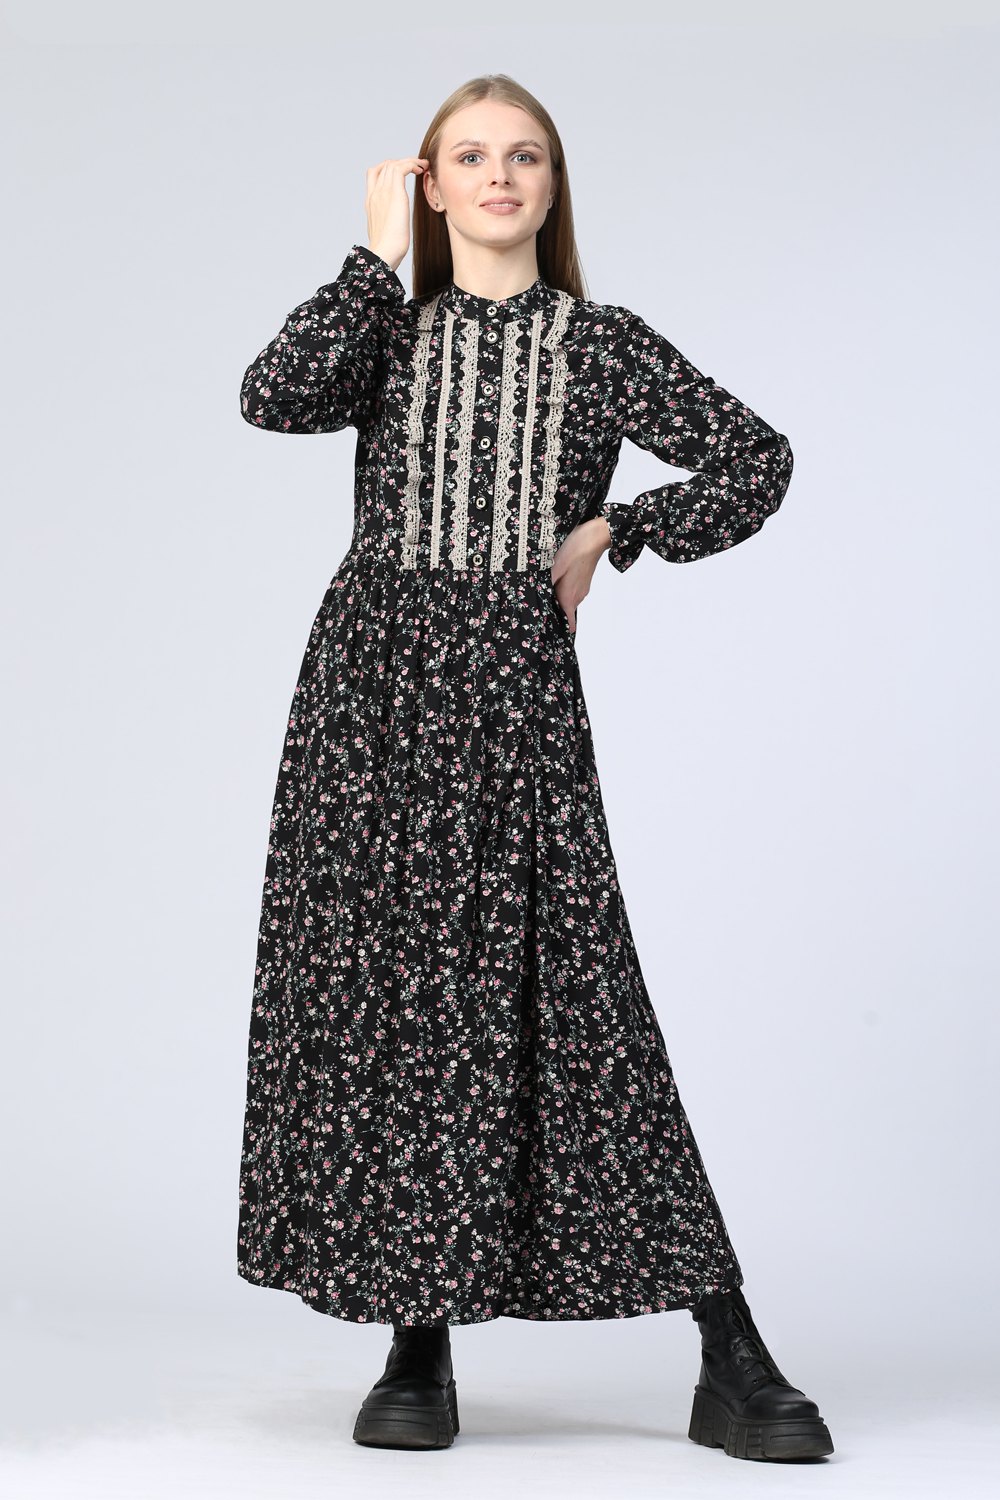 Платье женское "Казачка" модель 682/1 розочки на чёрном